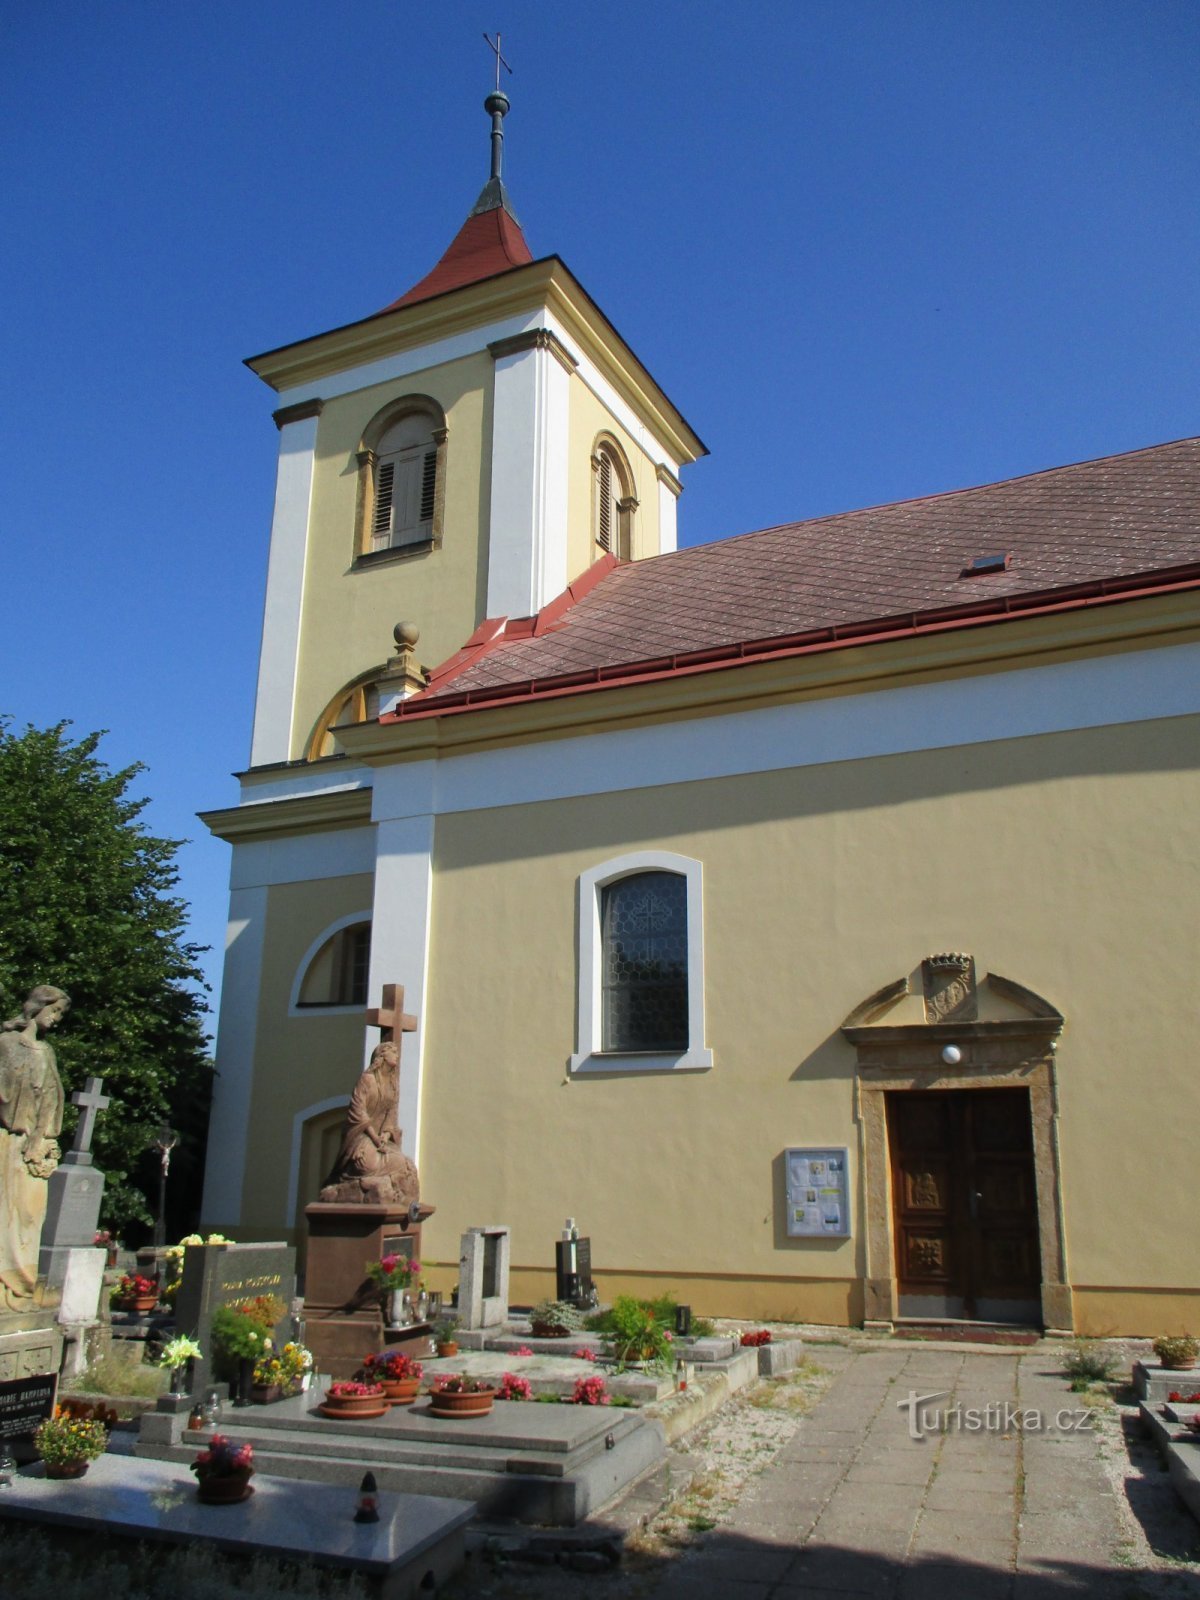 Церковь св. Юстус, епископ (Зволе)